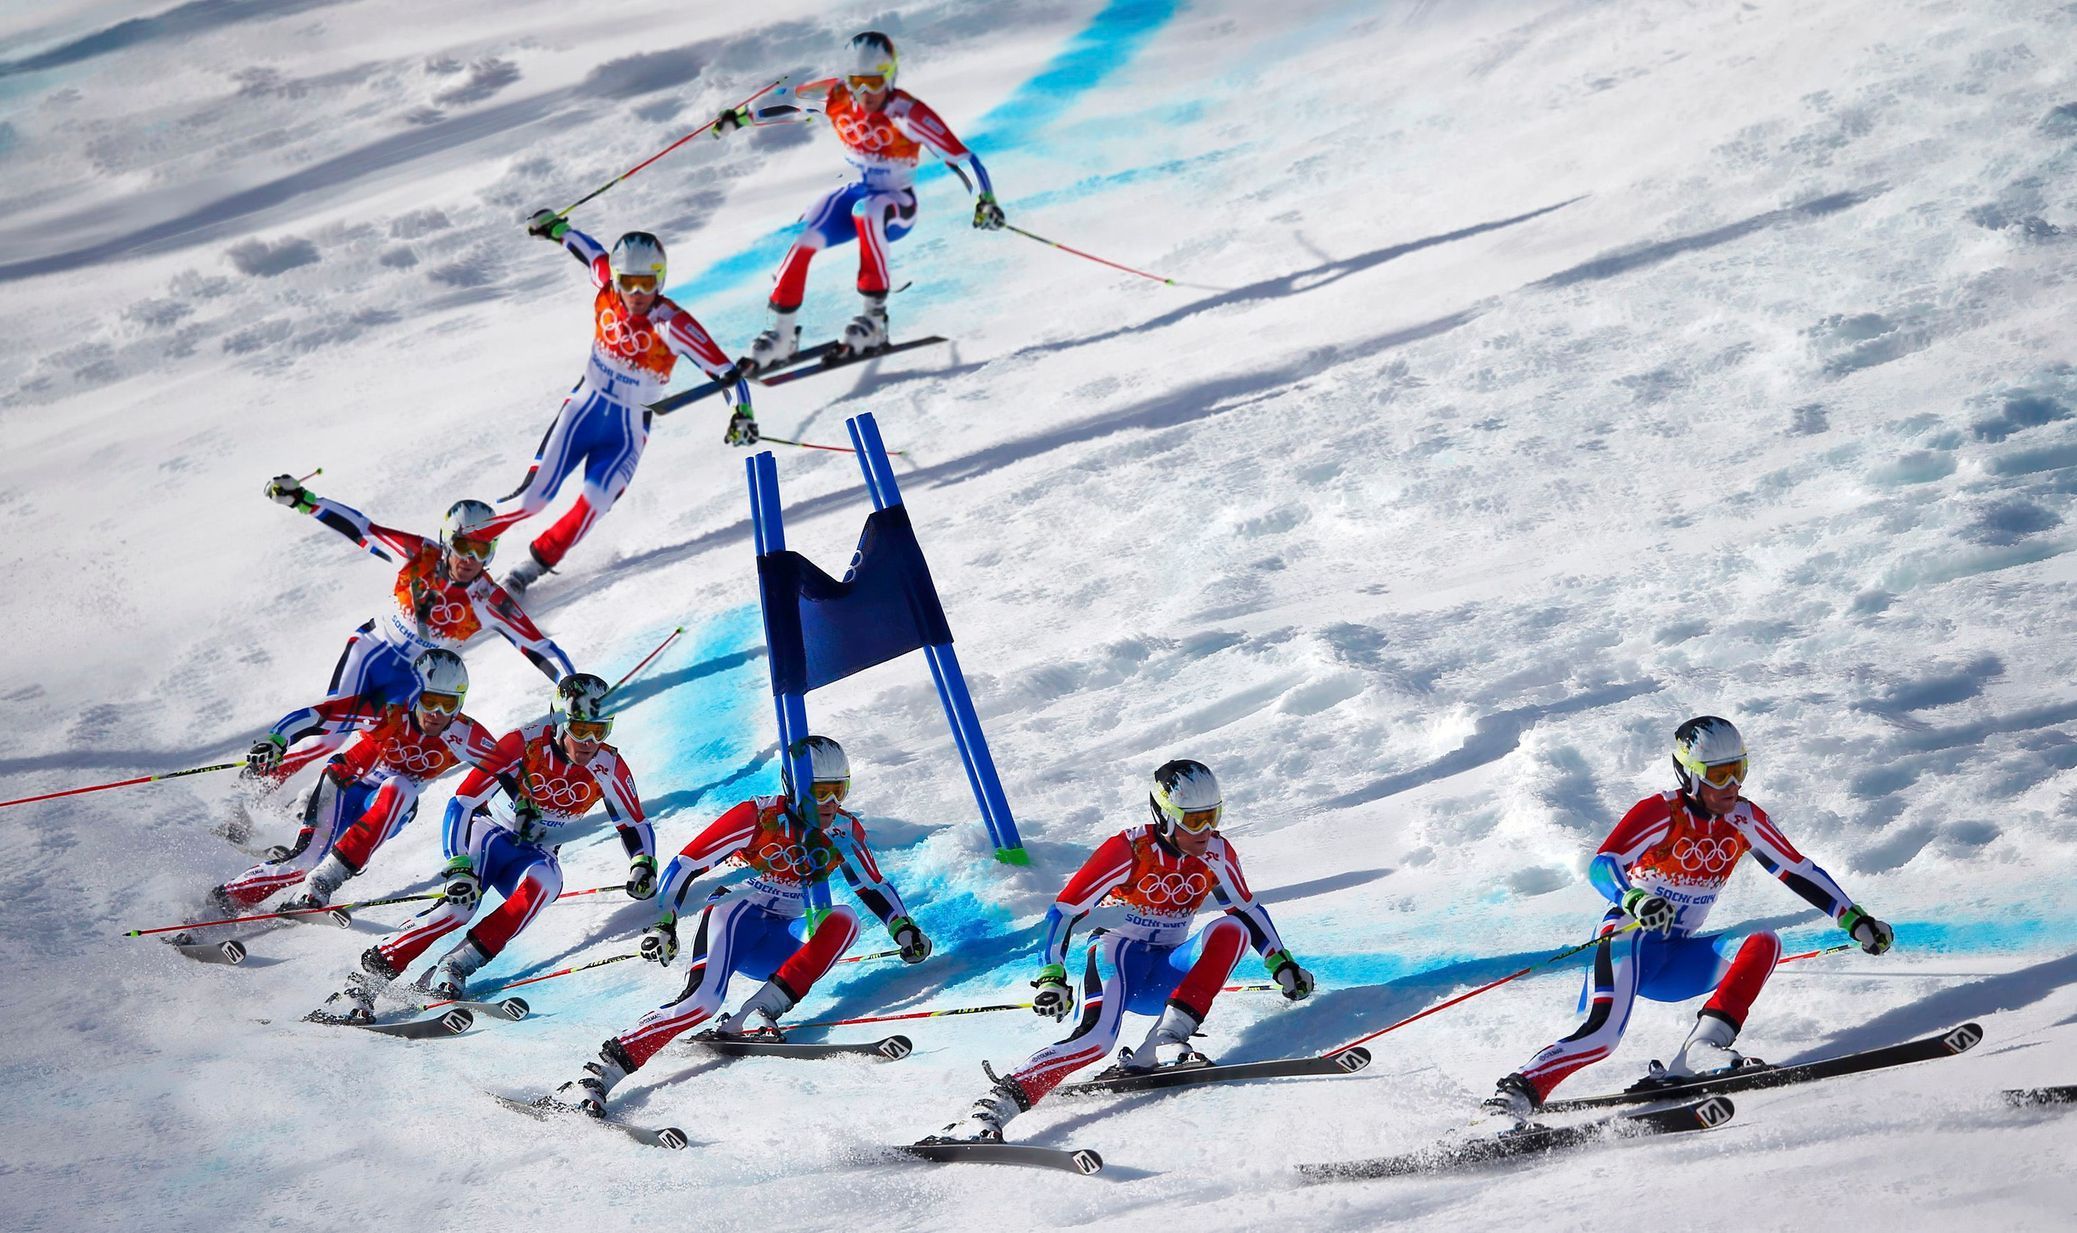 Soči 2014, obří slalom M: Alexis Pinturault, Francie